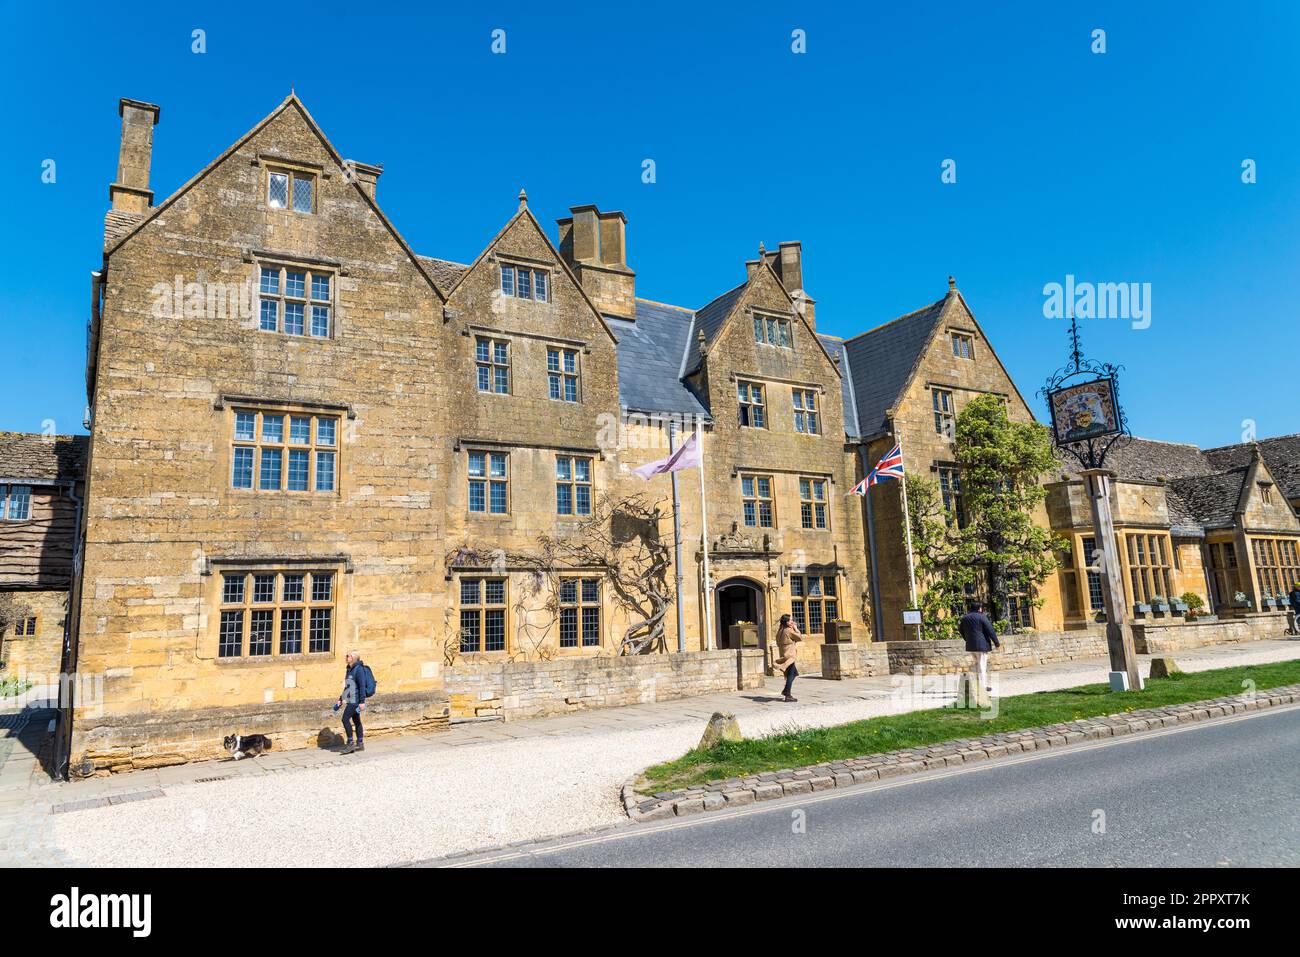 L'hôtel Lygon Arms se trouve dans le joli village de Broadway, dans le Worcestershire, en Angleterre, au Royaume-Uni Banque D'Images